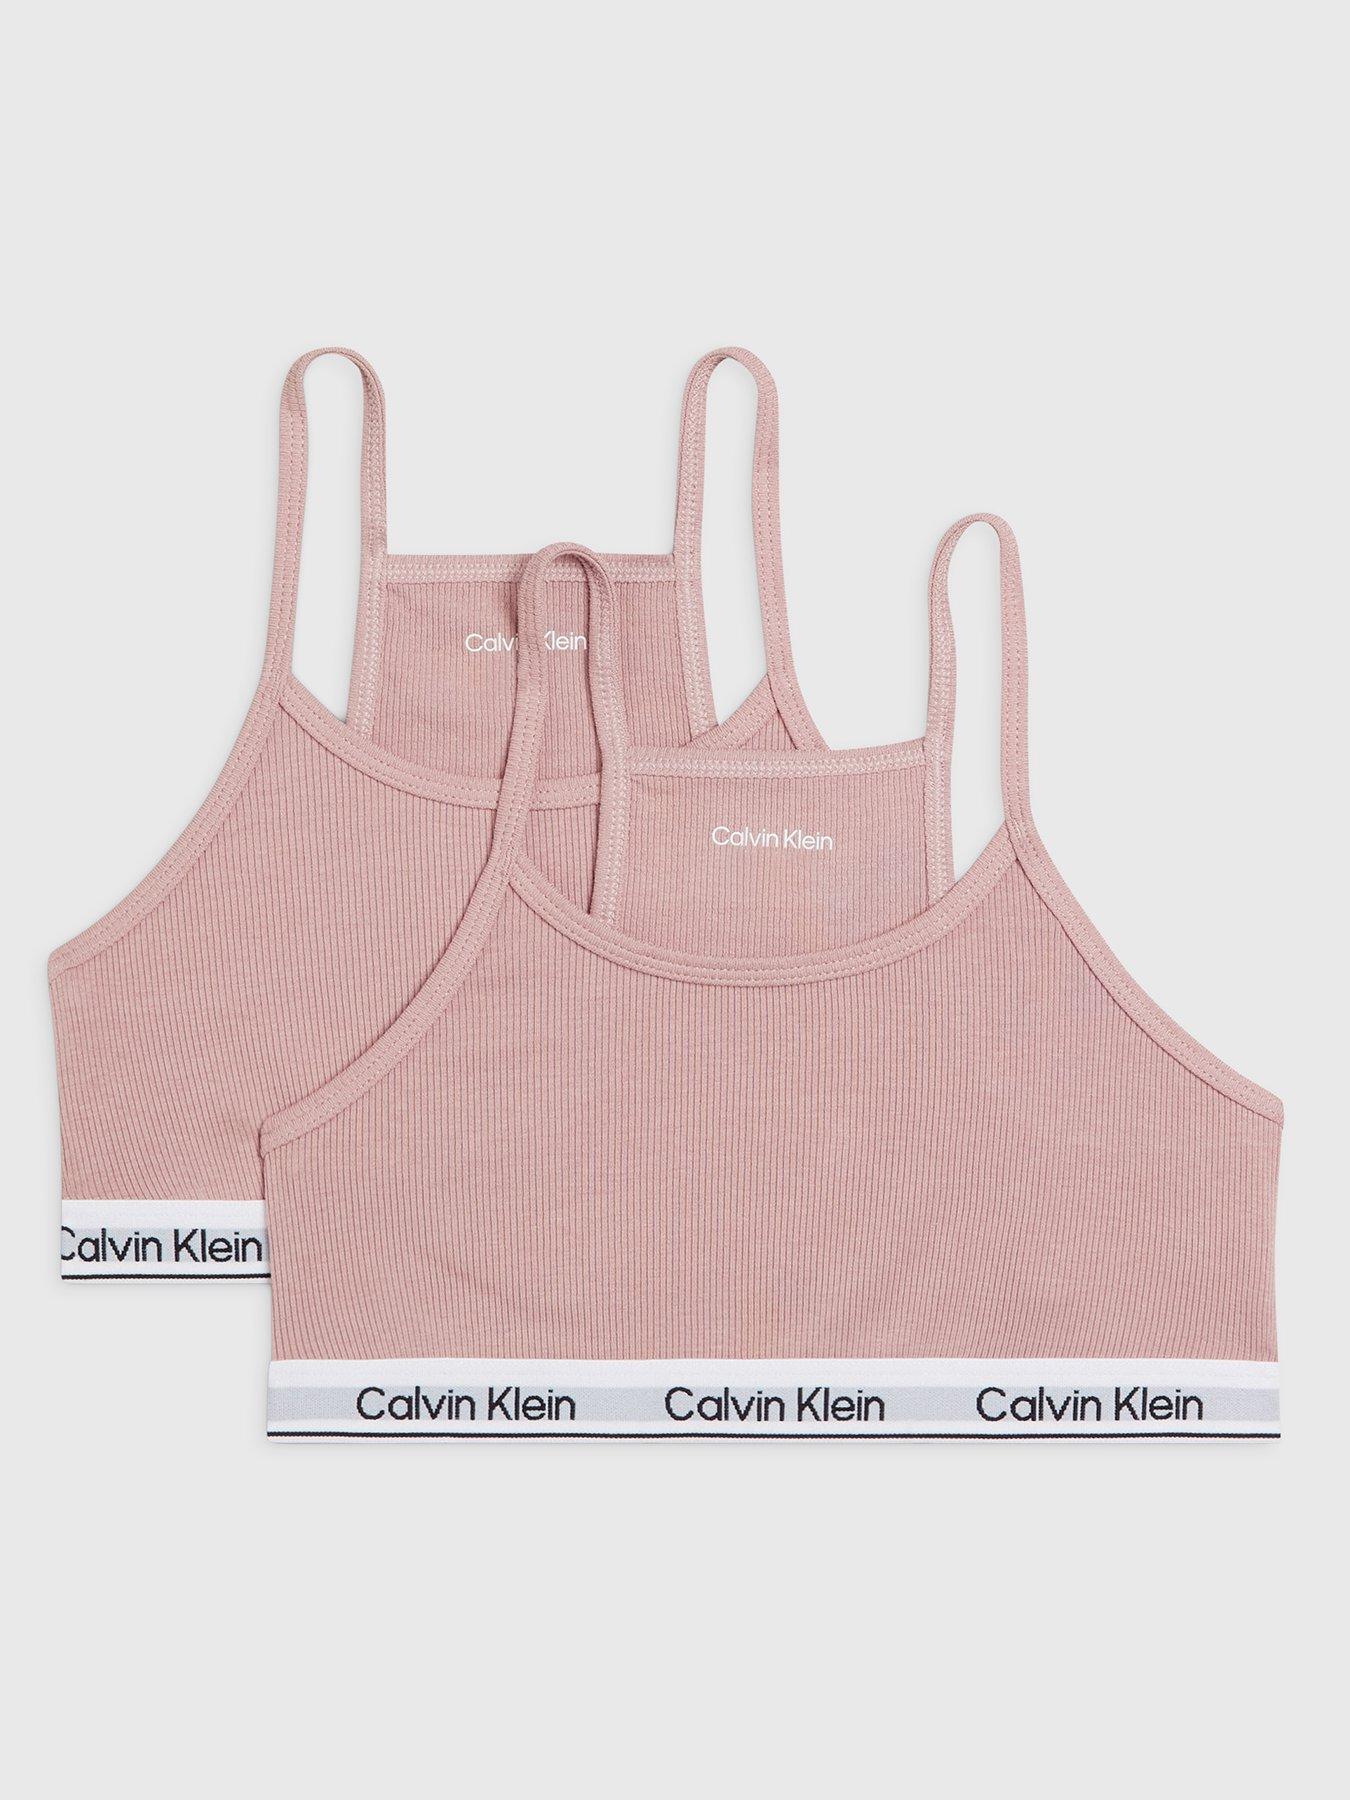 Calvin klein, Underwear & socks, Girls clothes, Child & baby